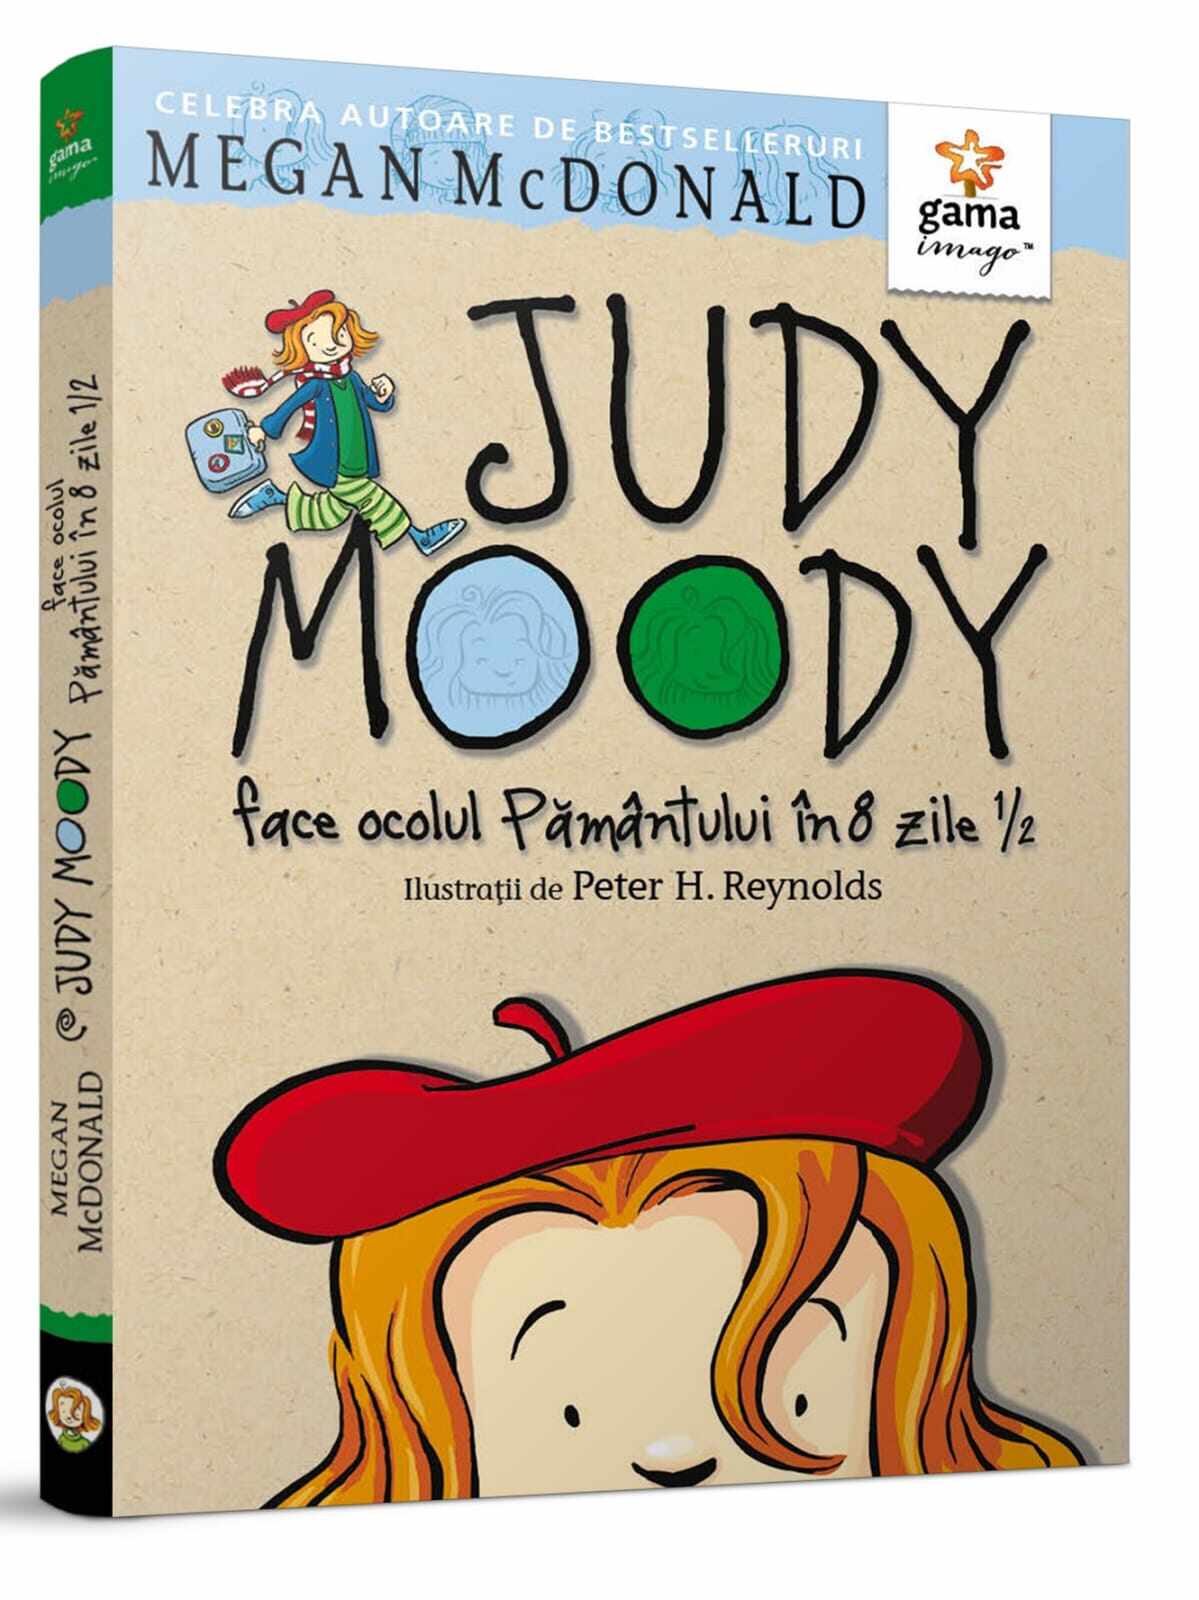 Judy Moody face ocolul Pamantului in 8 zile 1 2, Editura Gama, 6-7 ani +